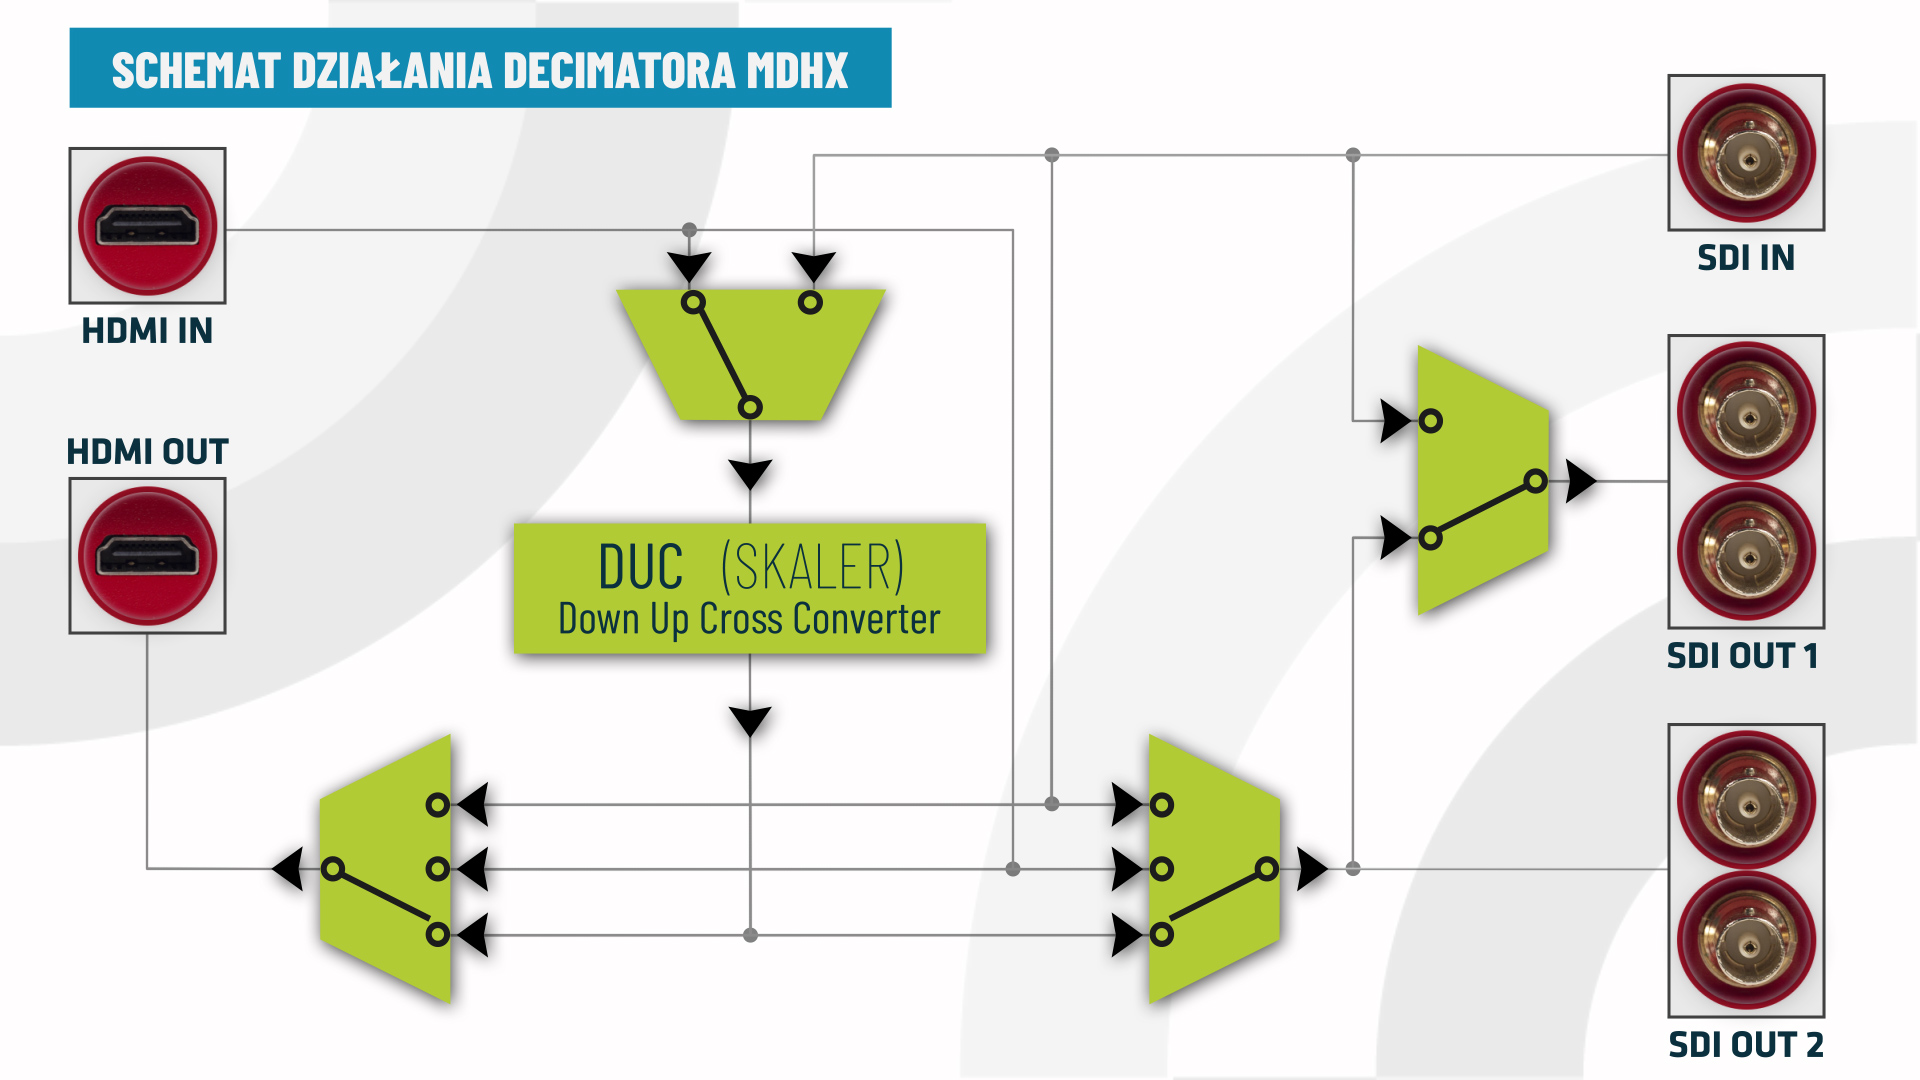 konwerter Decimator MDHX schemat